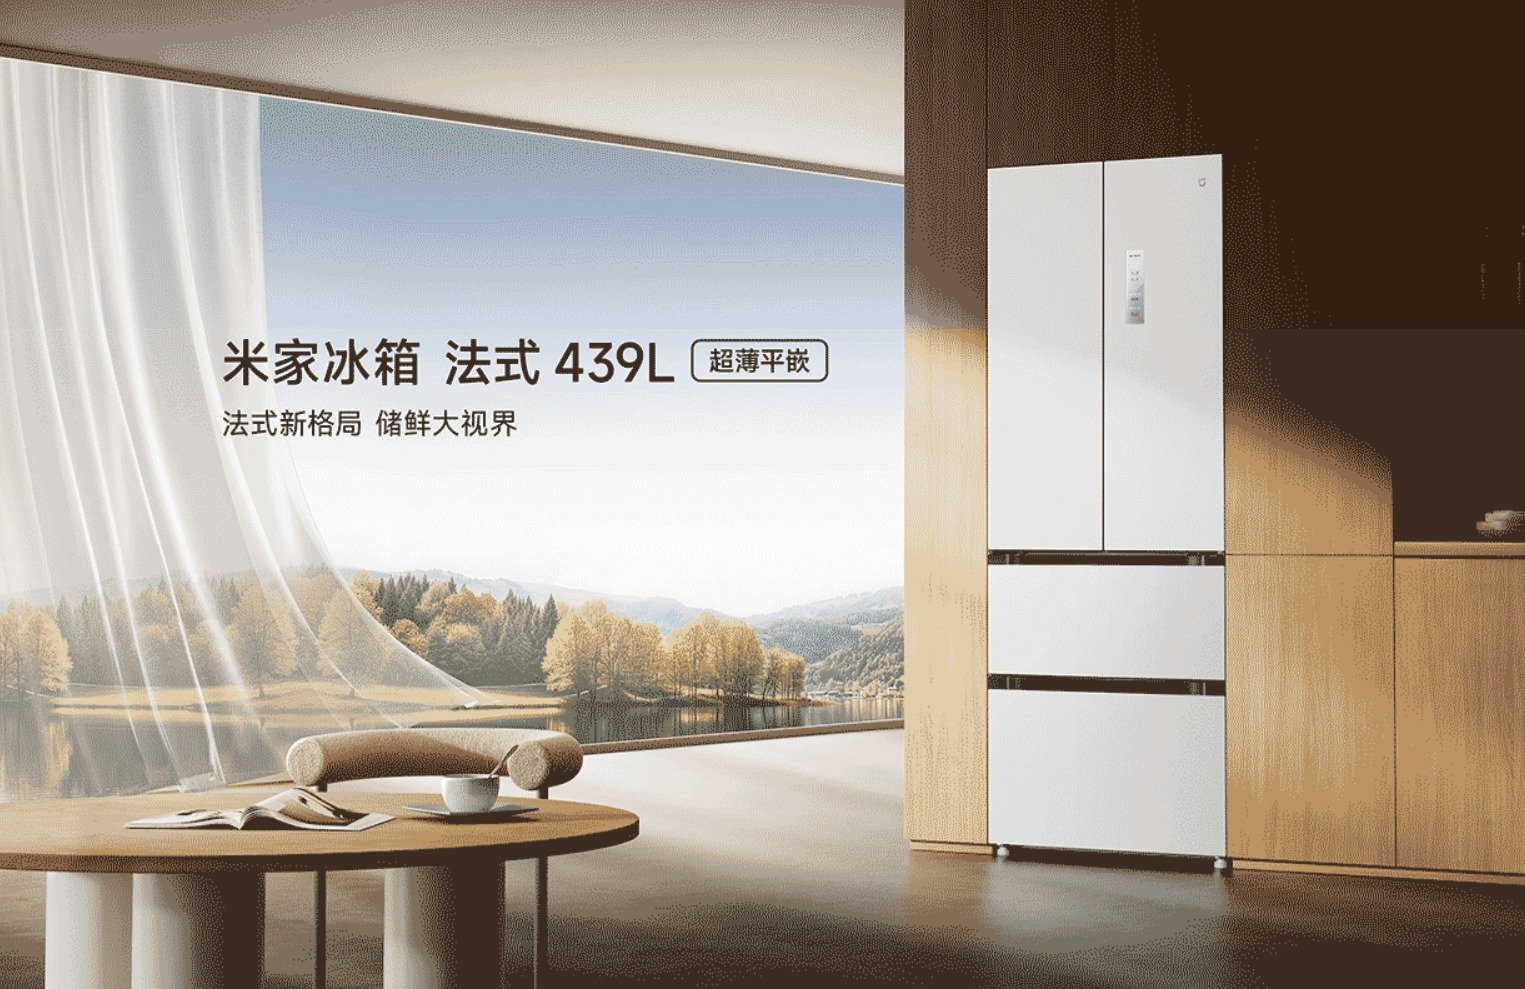 Refrigerador estilo francés Xiaomi Mijia 439L lanzado en China